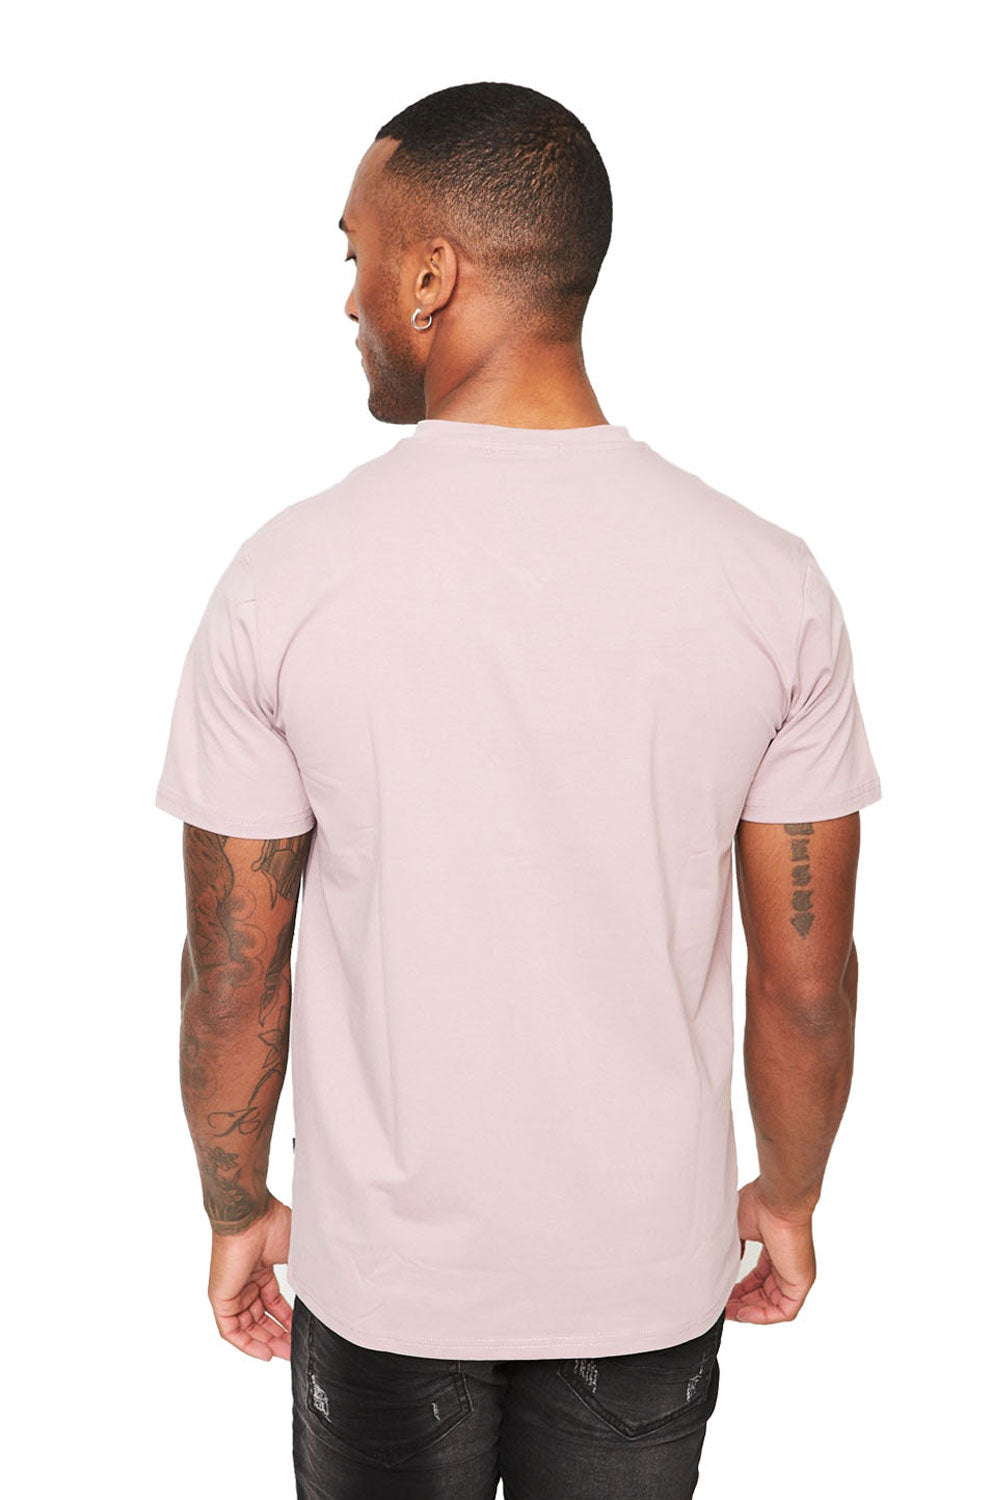 BARABAS Men's Solid Color V-neck T-shirts VTV216  Light Purple